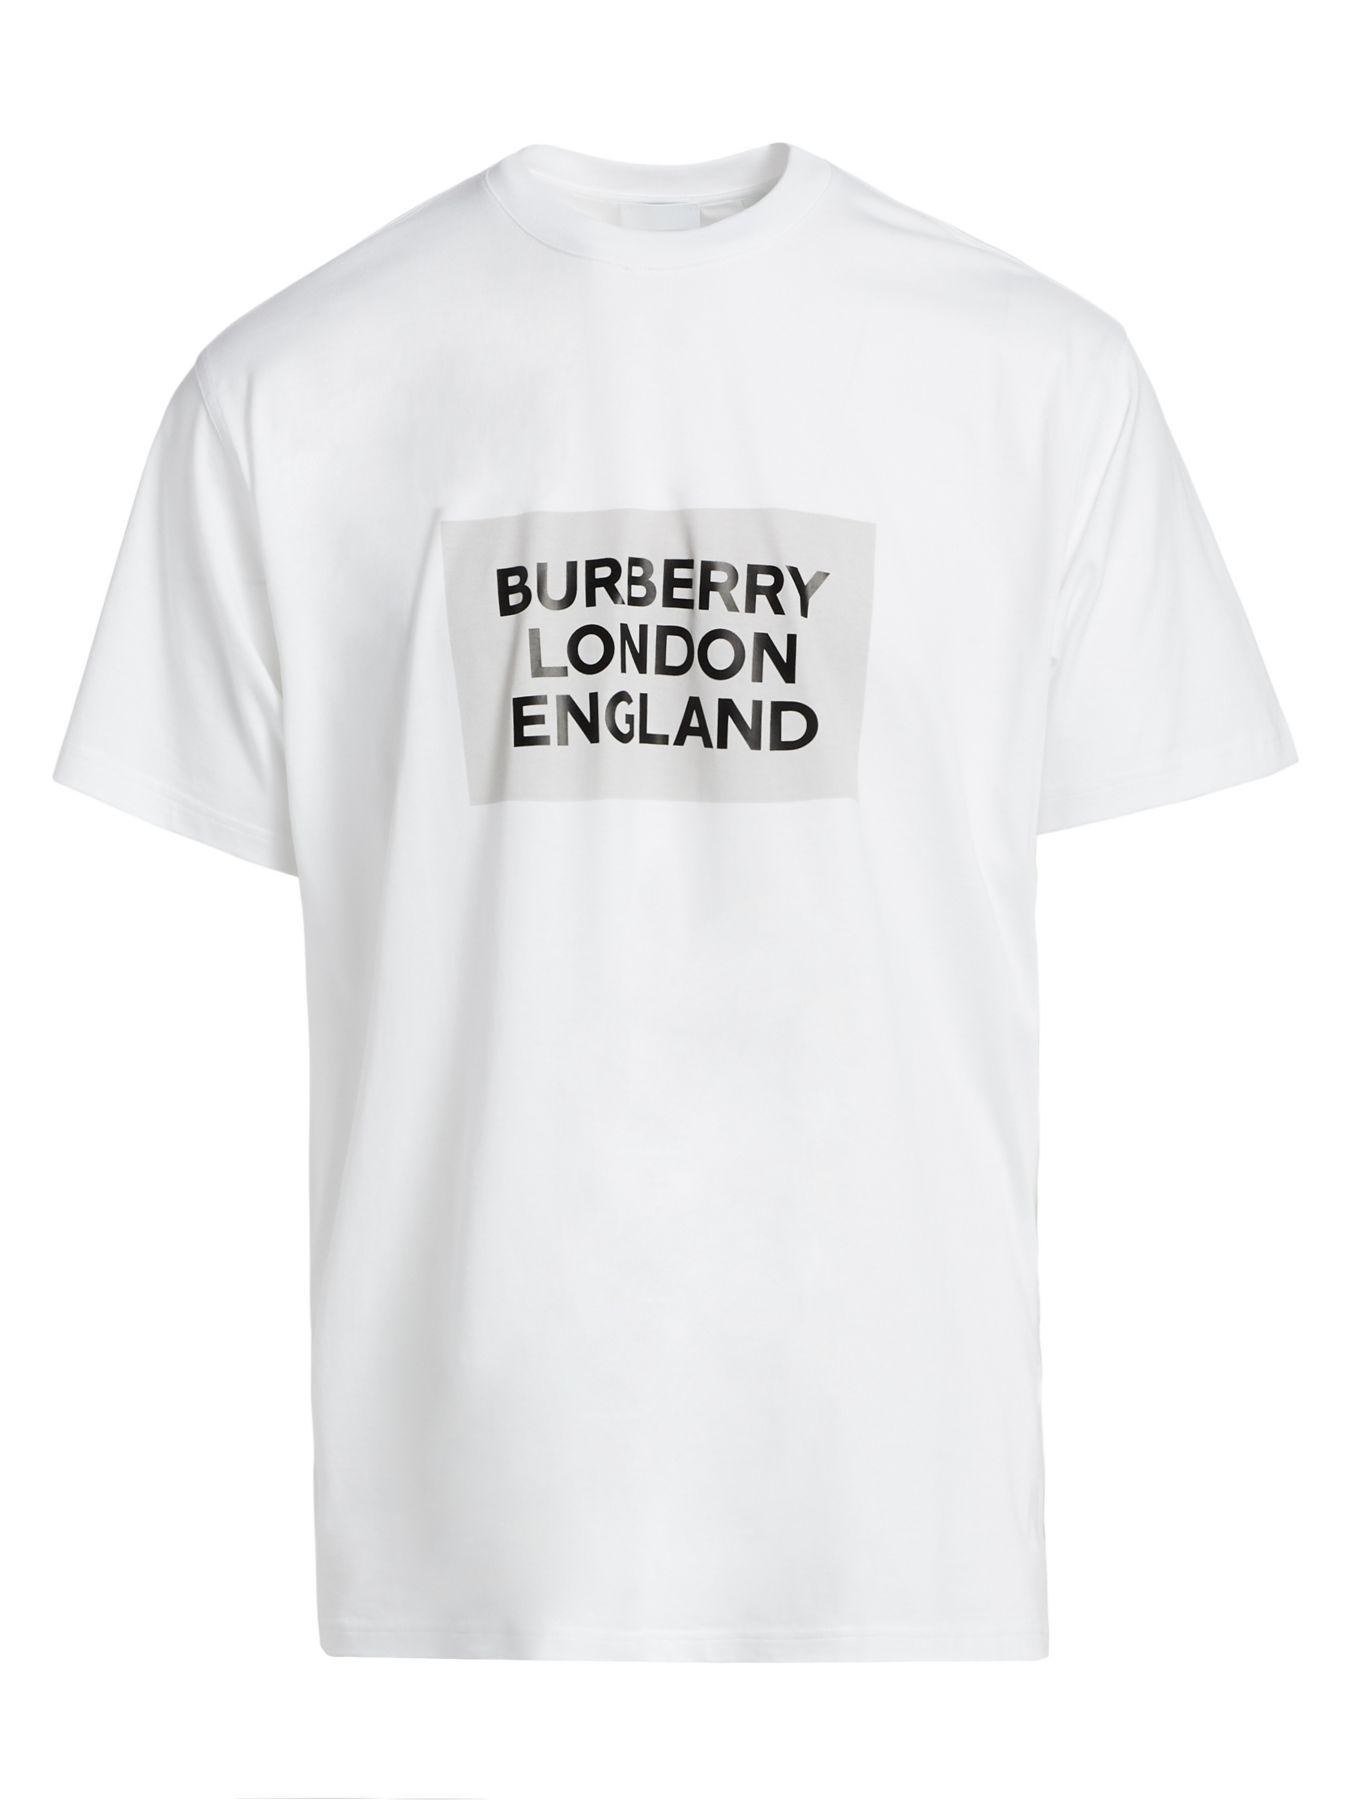 はチェック Burberry london england Tシャツ さんの